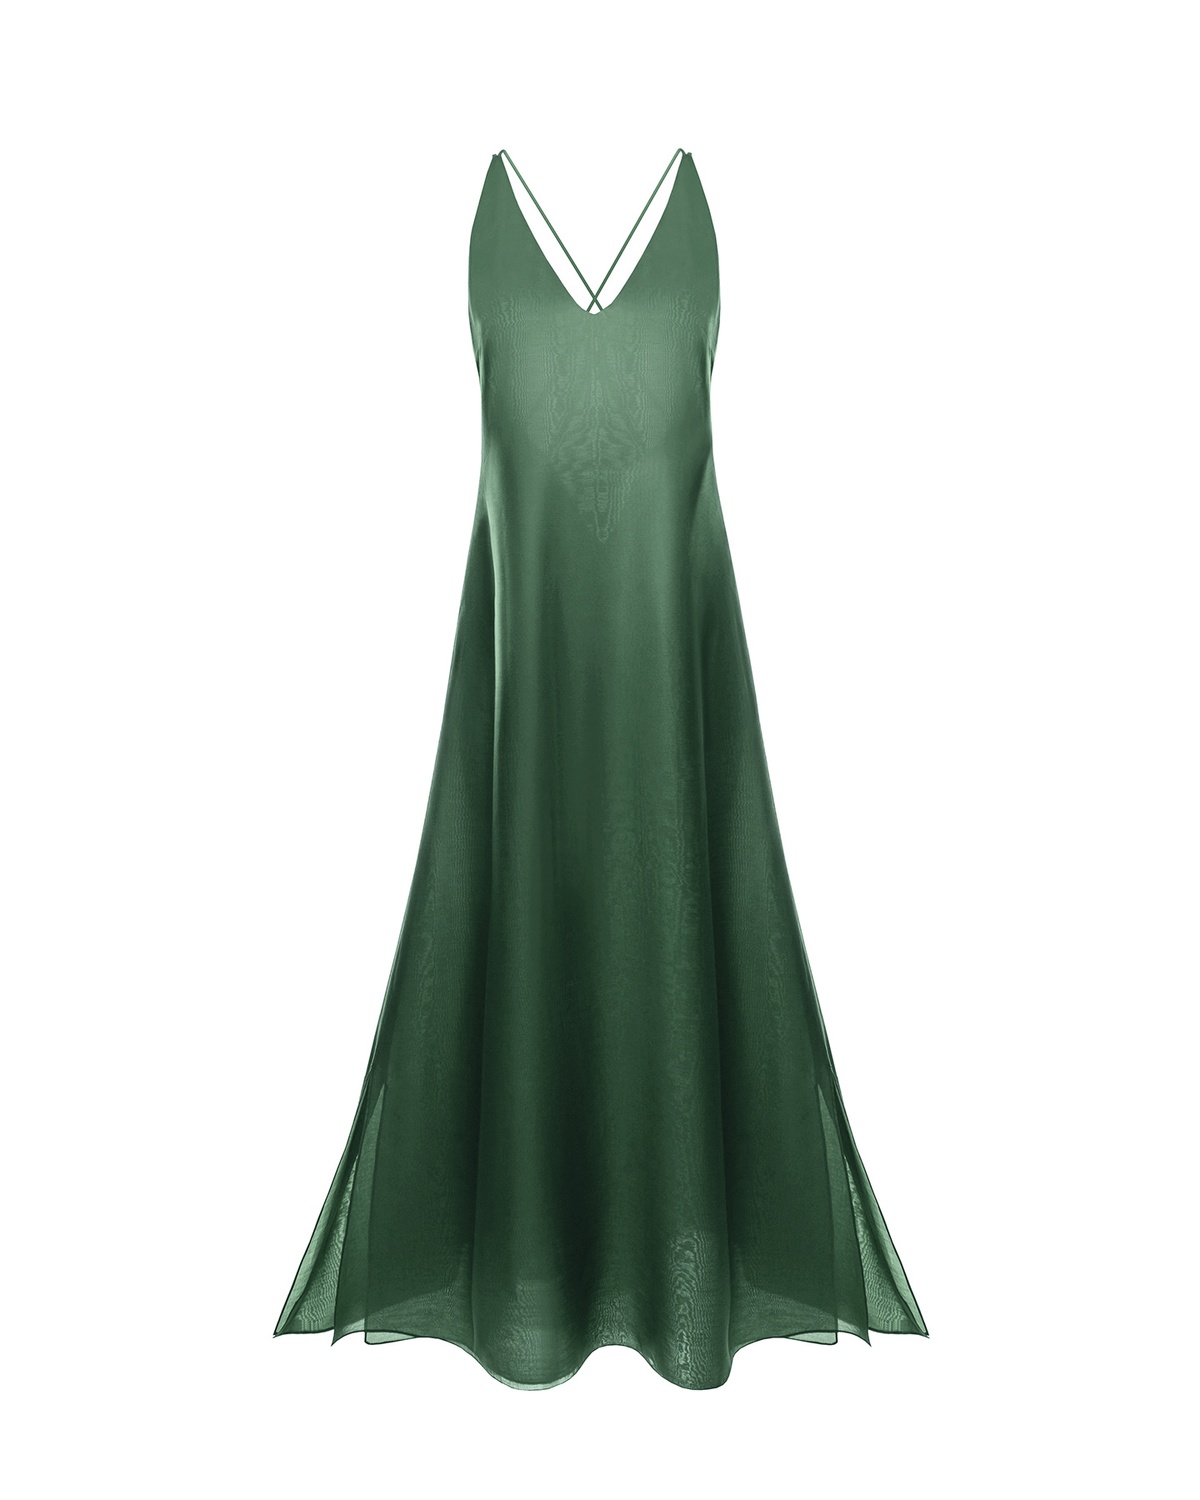 Сукня з додаванням шовку Oceania, Зелений, S